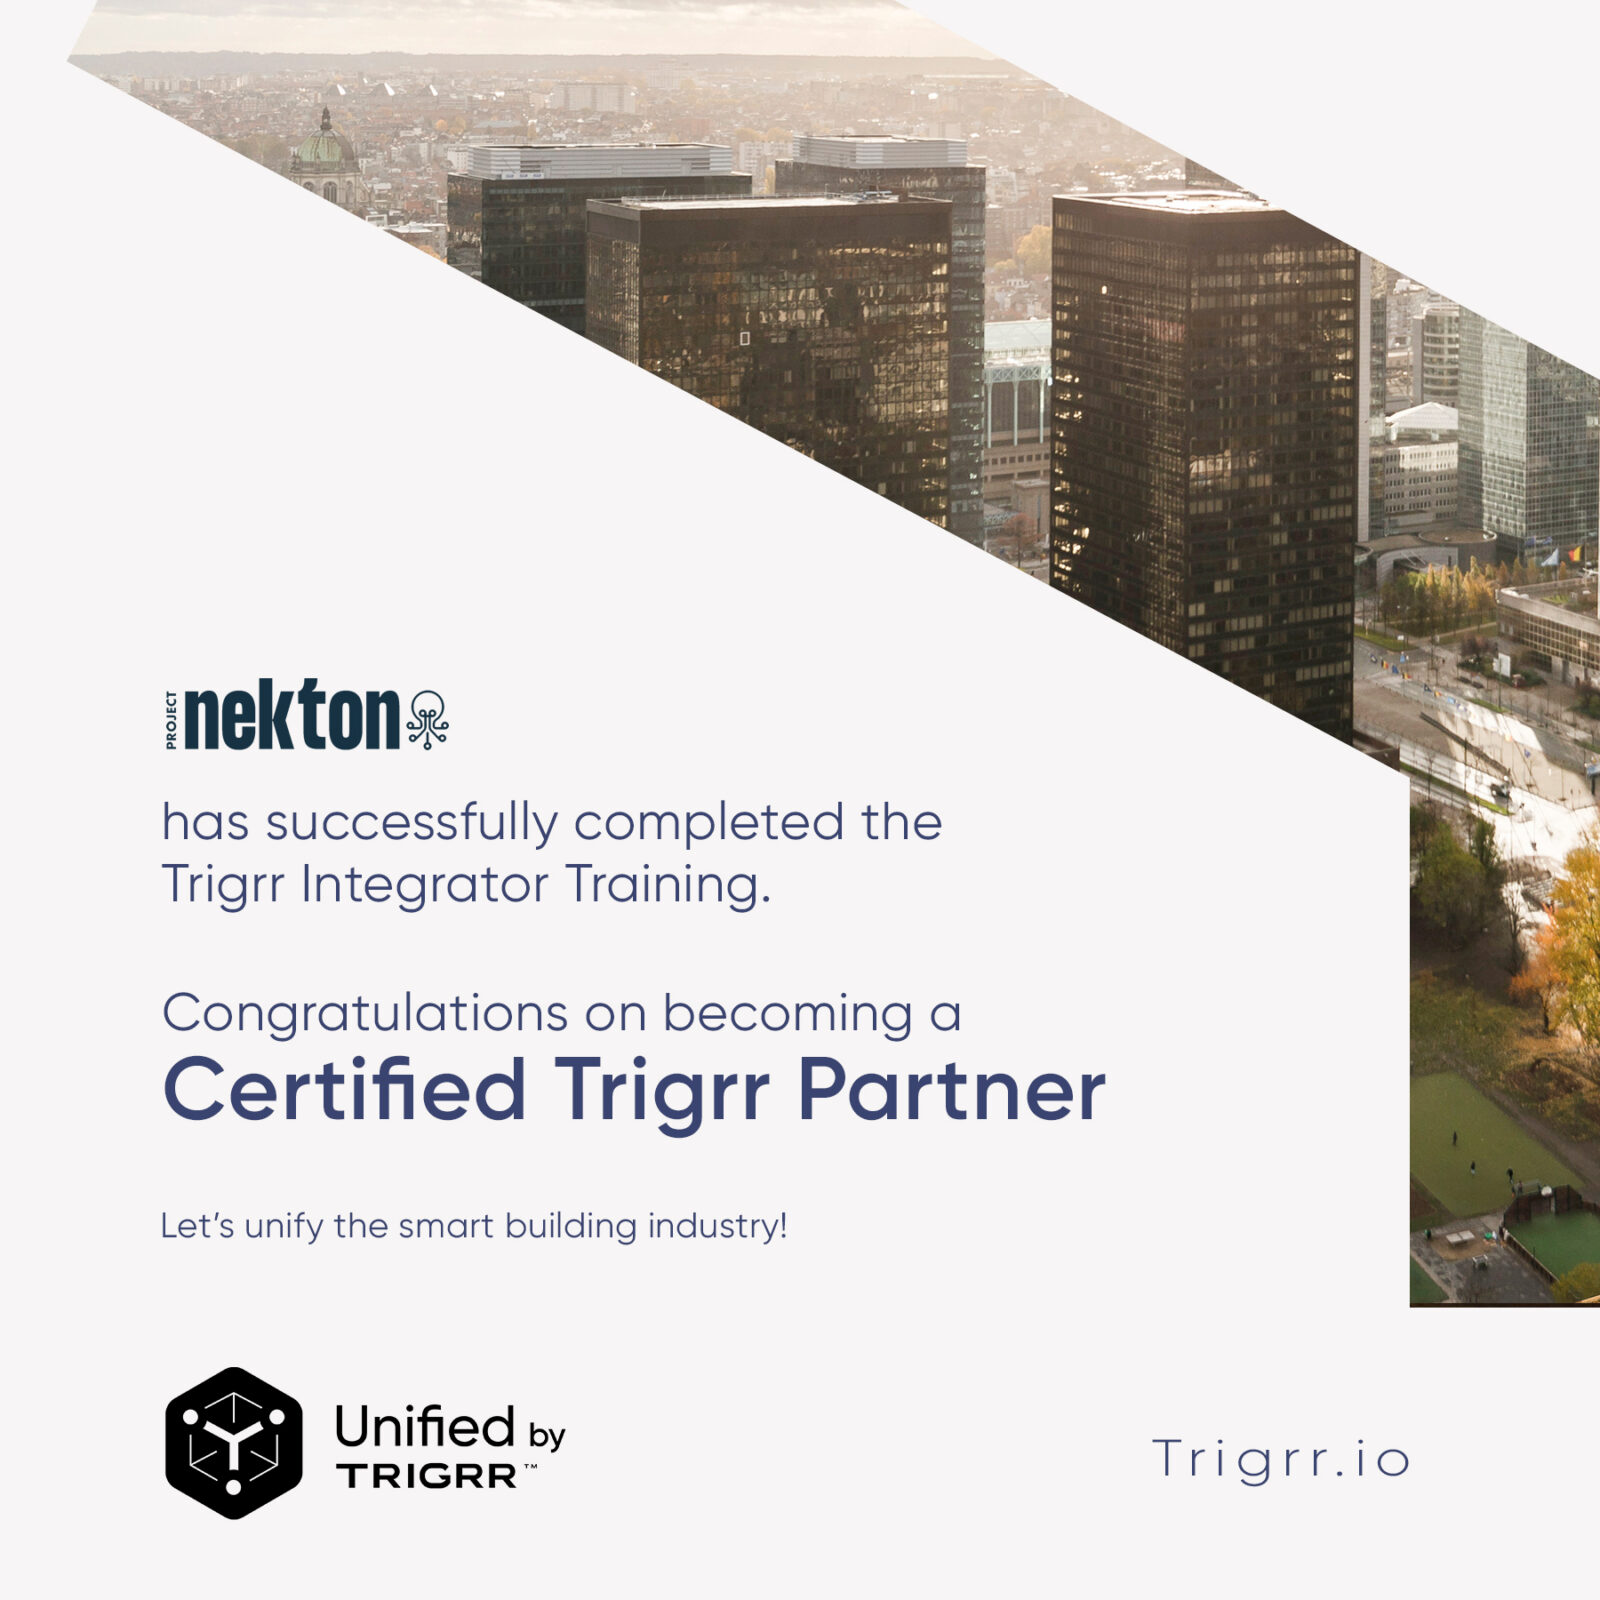 Project Nekton is gecertifieerde integrator van het Building Operating System Trigrr